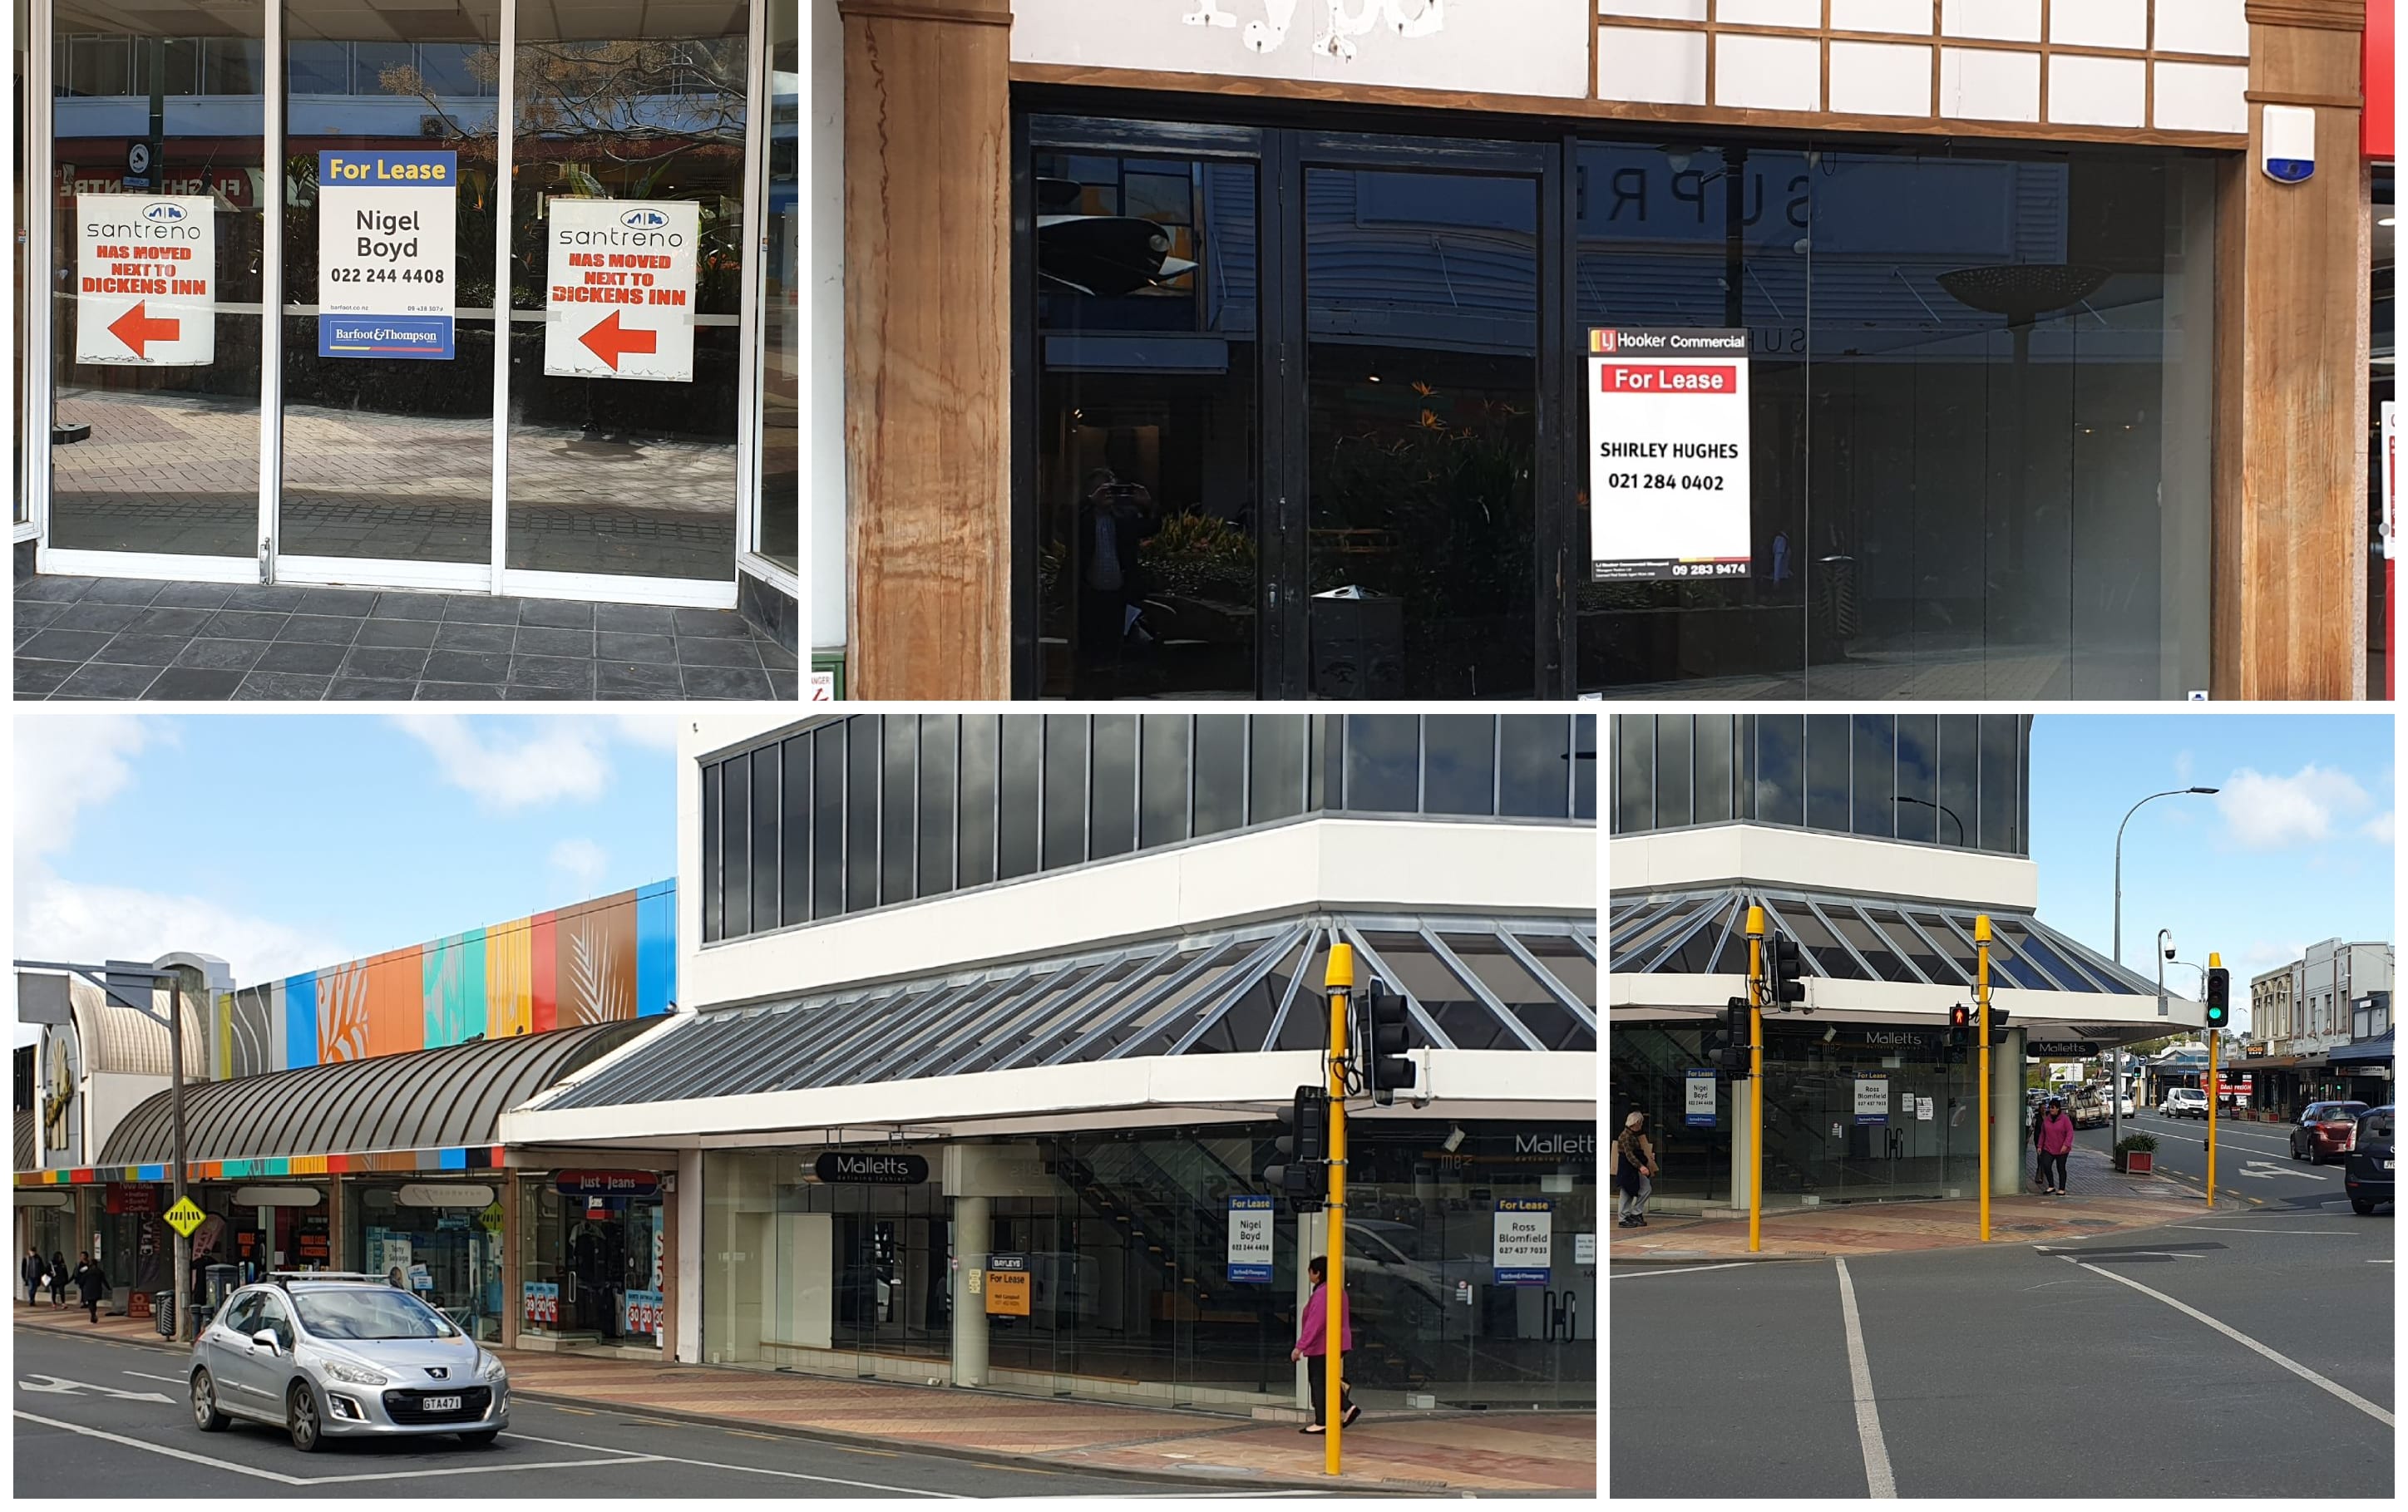 Whangarei CBD retail precinct - empty shops Sept 2019